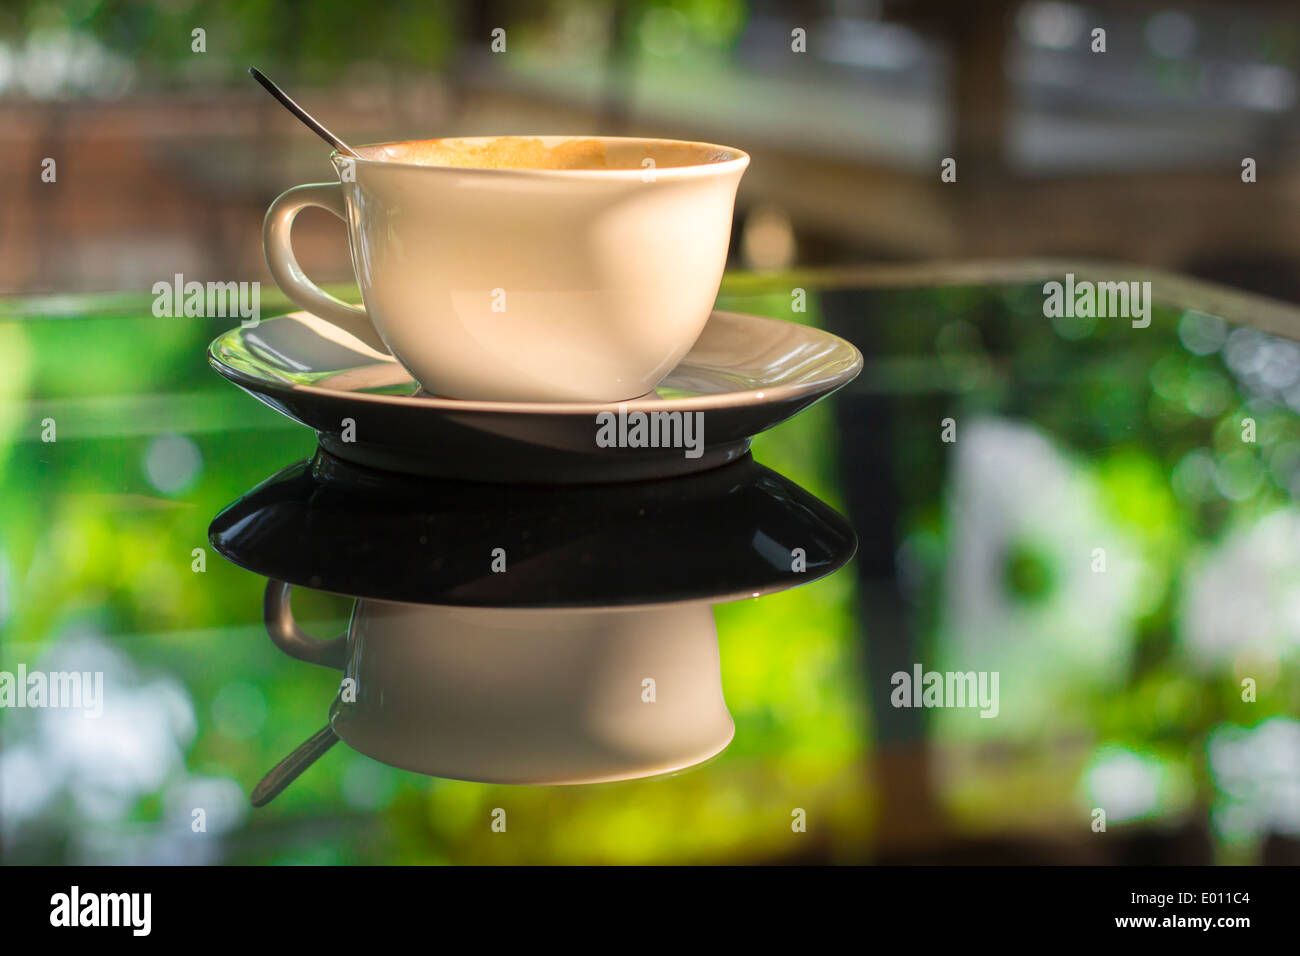 Tasse Kaffee am Tisch aus Glas Spiegel reflektieren grünen Sommer Garten Morgensonne Stockfoto